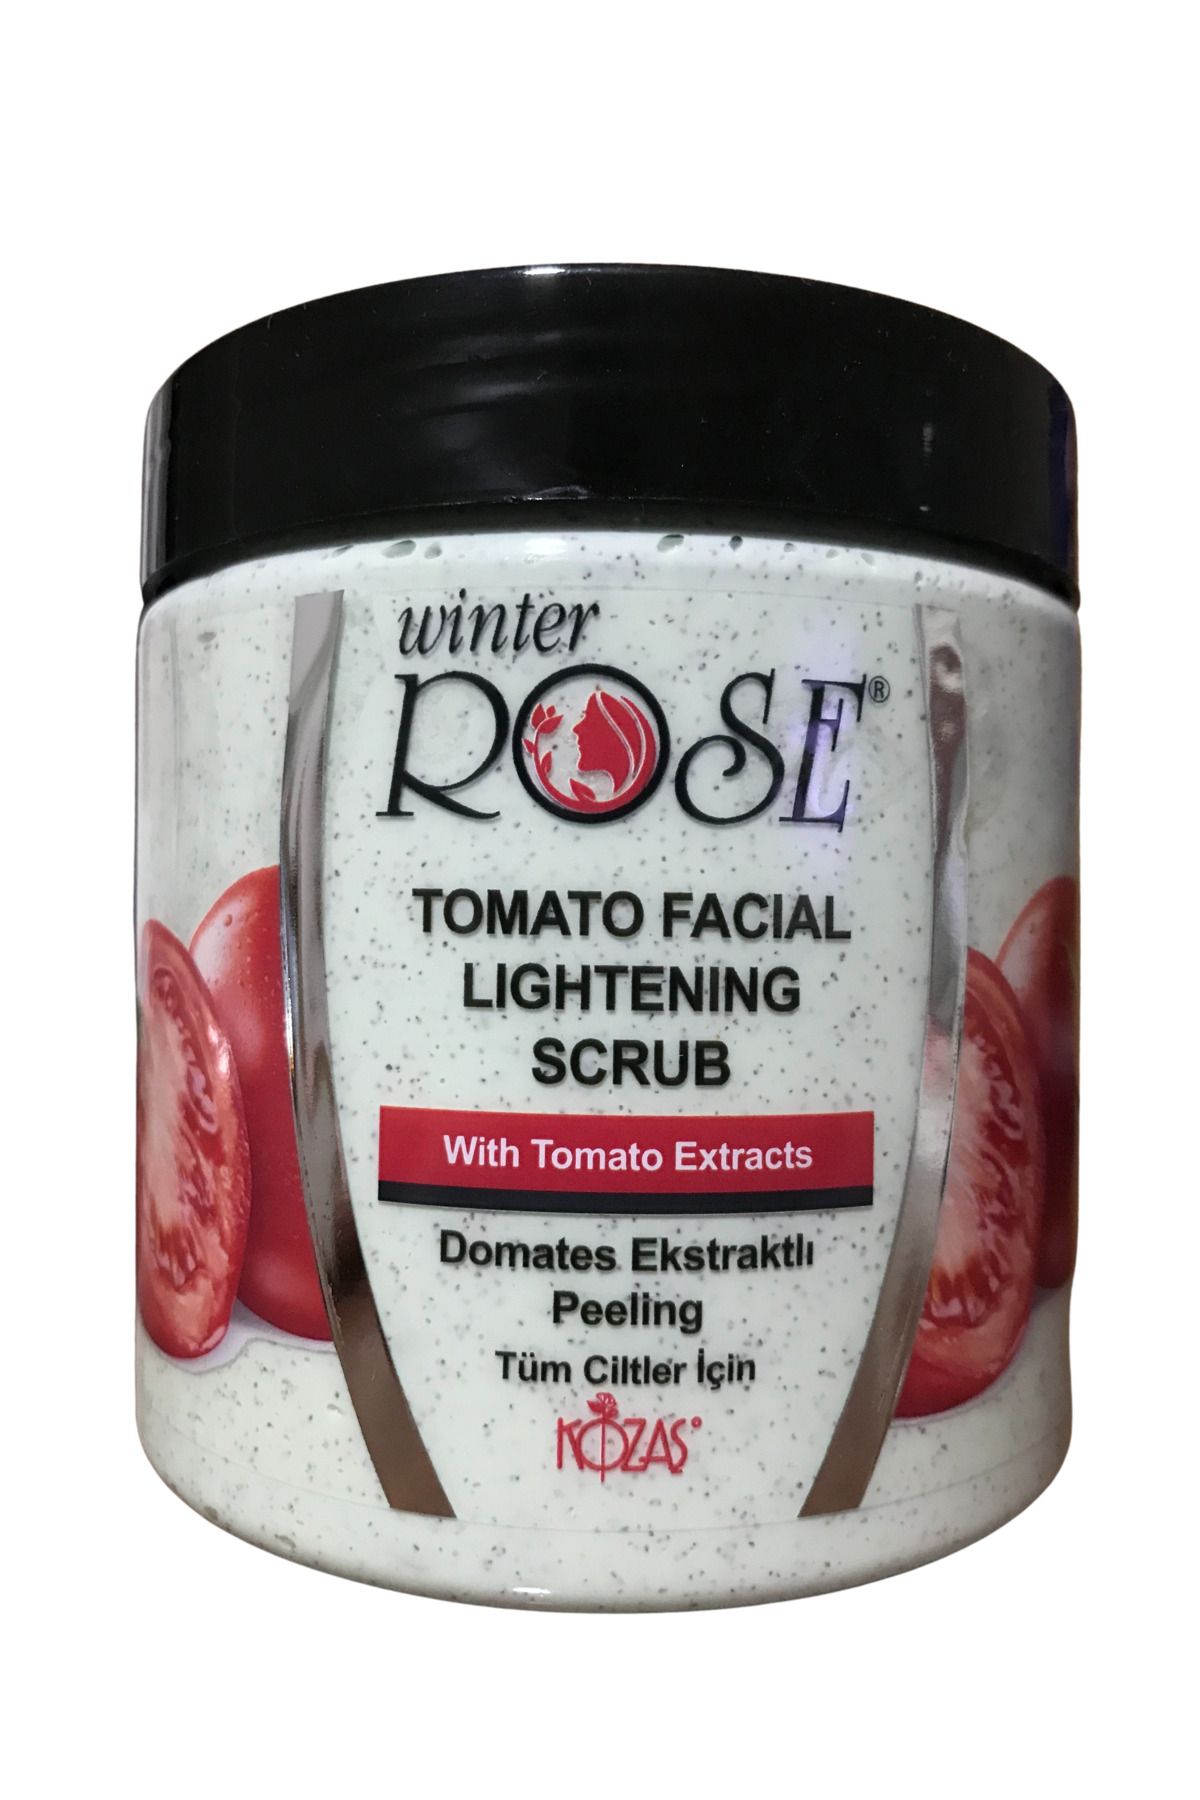 Kontes Wınter Rose Tomato Facial Lightening Scrub